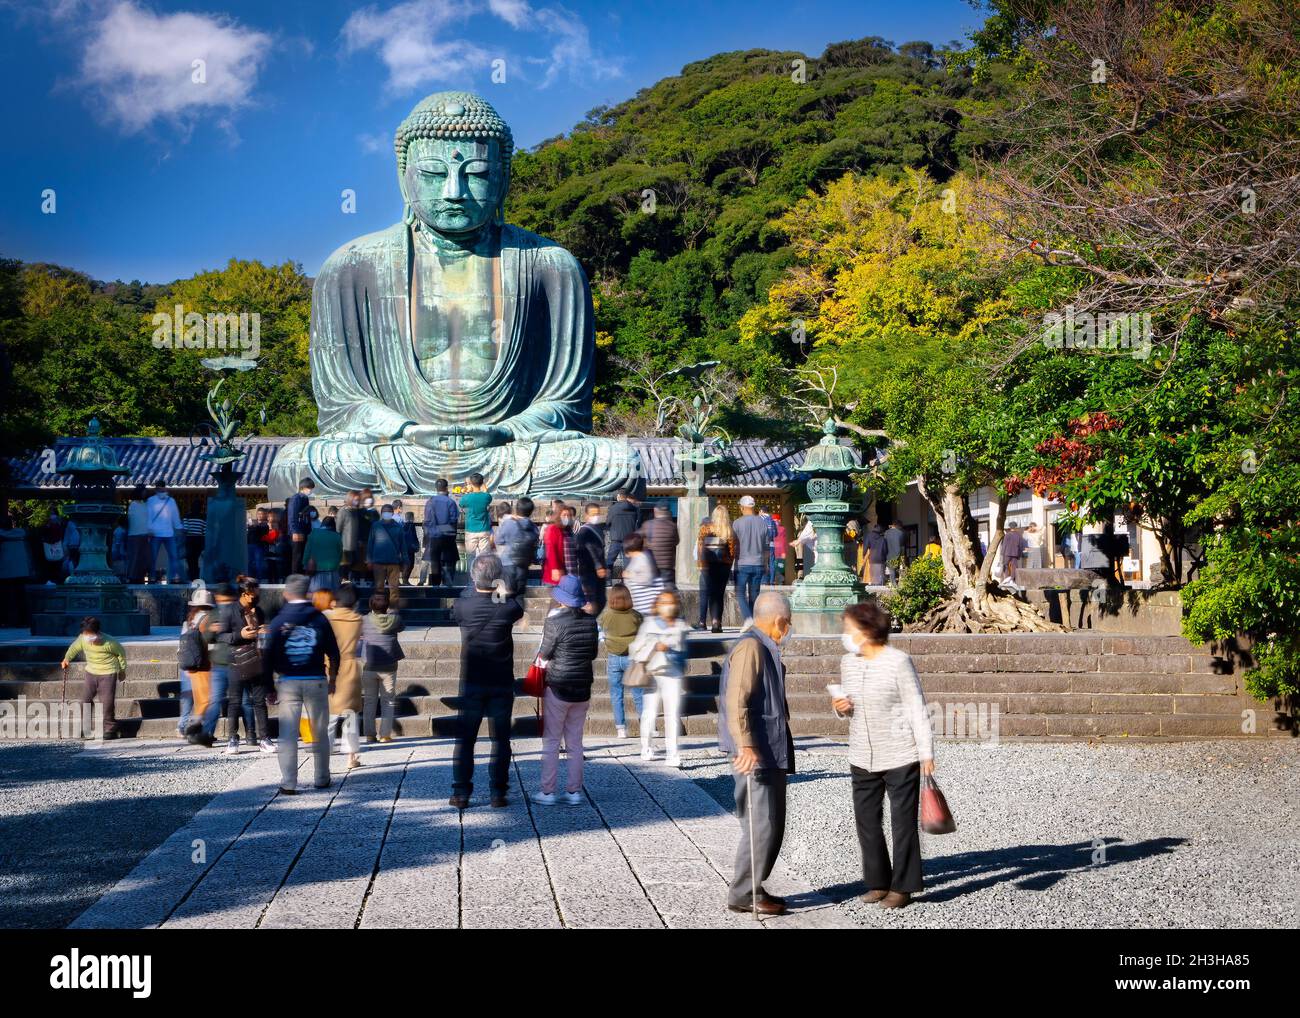 Touristen versammeln sich am Großen Buddha, oder Kamakura Daibutsu, die 43 Fuß hohe und 103 Tonnen schwere Statue wurde 1252 fertiggestellt und steht in Kamakura, Japan. Stockfoto